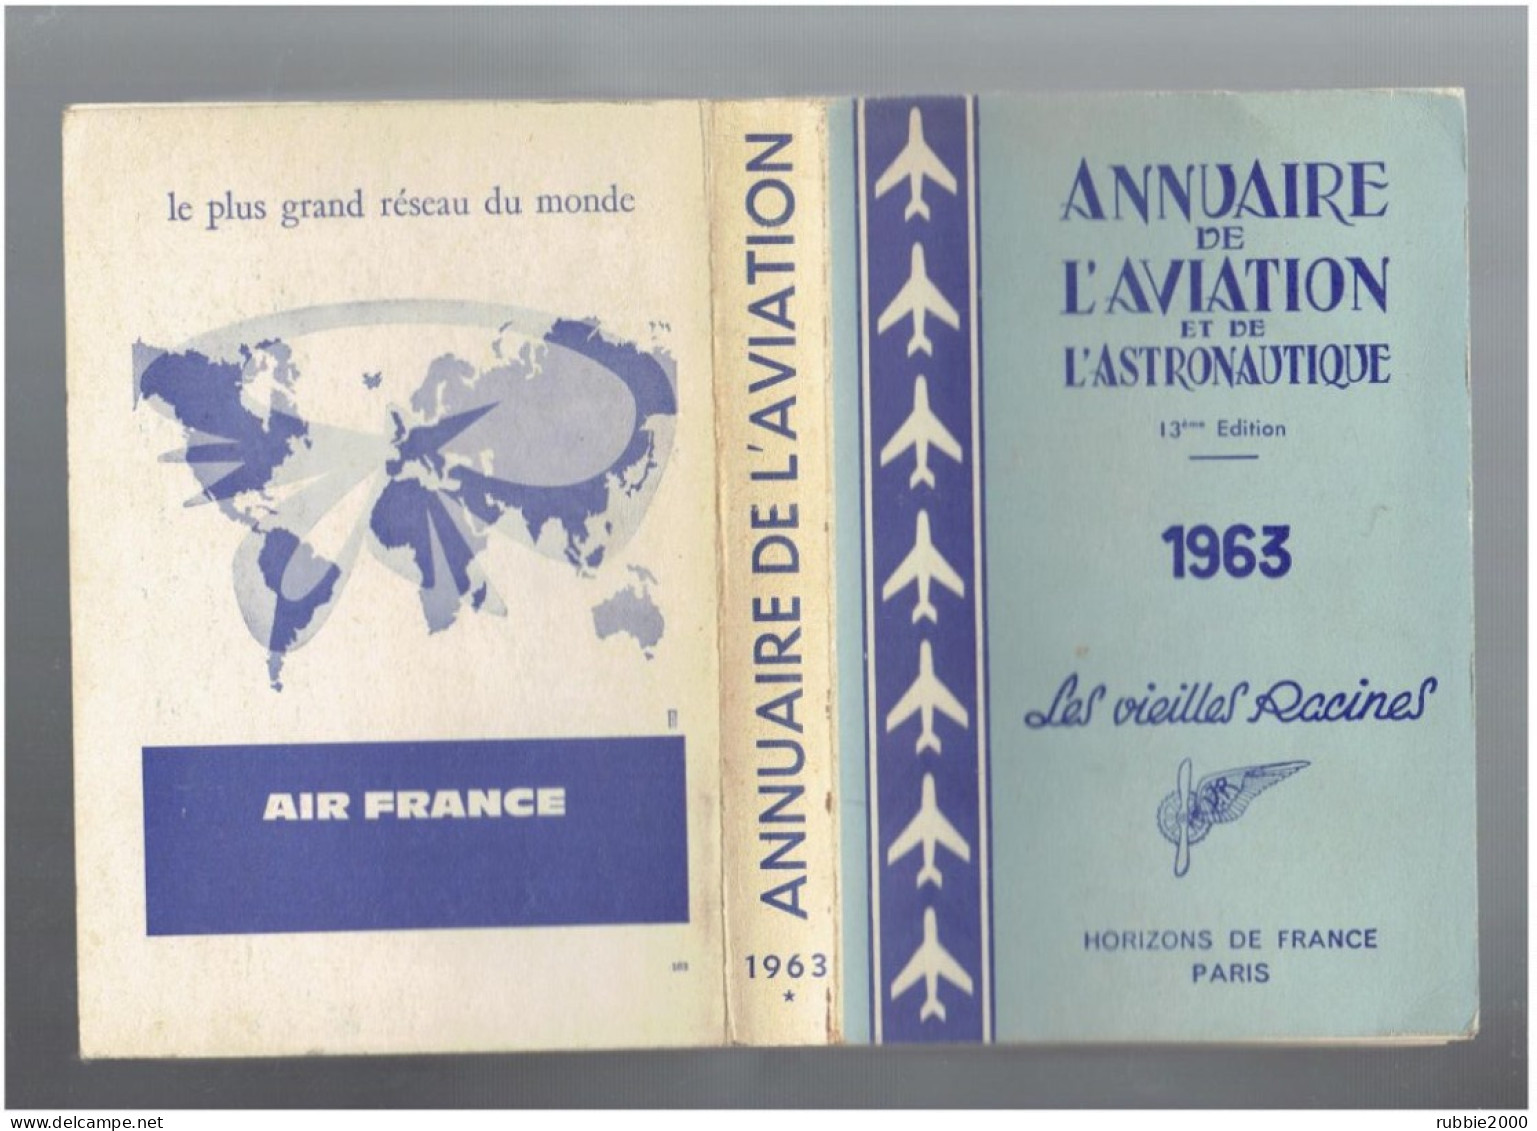 1963 ANNUAIRE DE L AVIATION ET DE L ASTRONAUTIQUE LES VIEILLES RACINES HORIZONS DE FRANCE AVION - Aerei